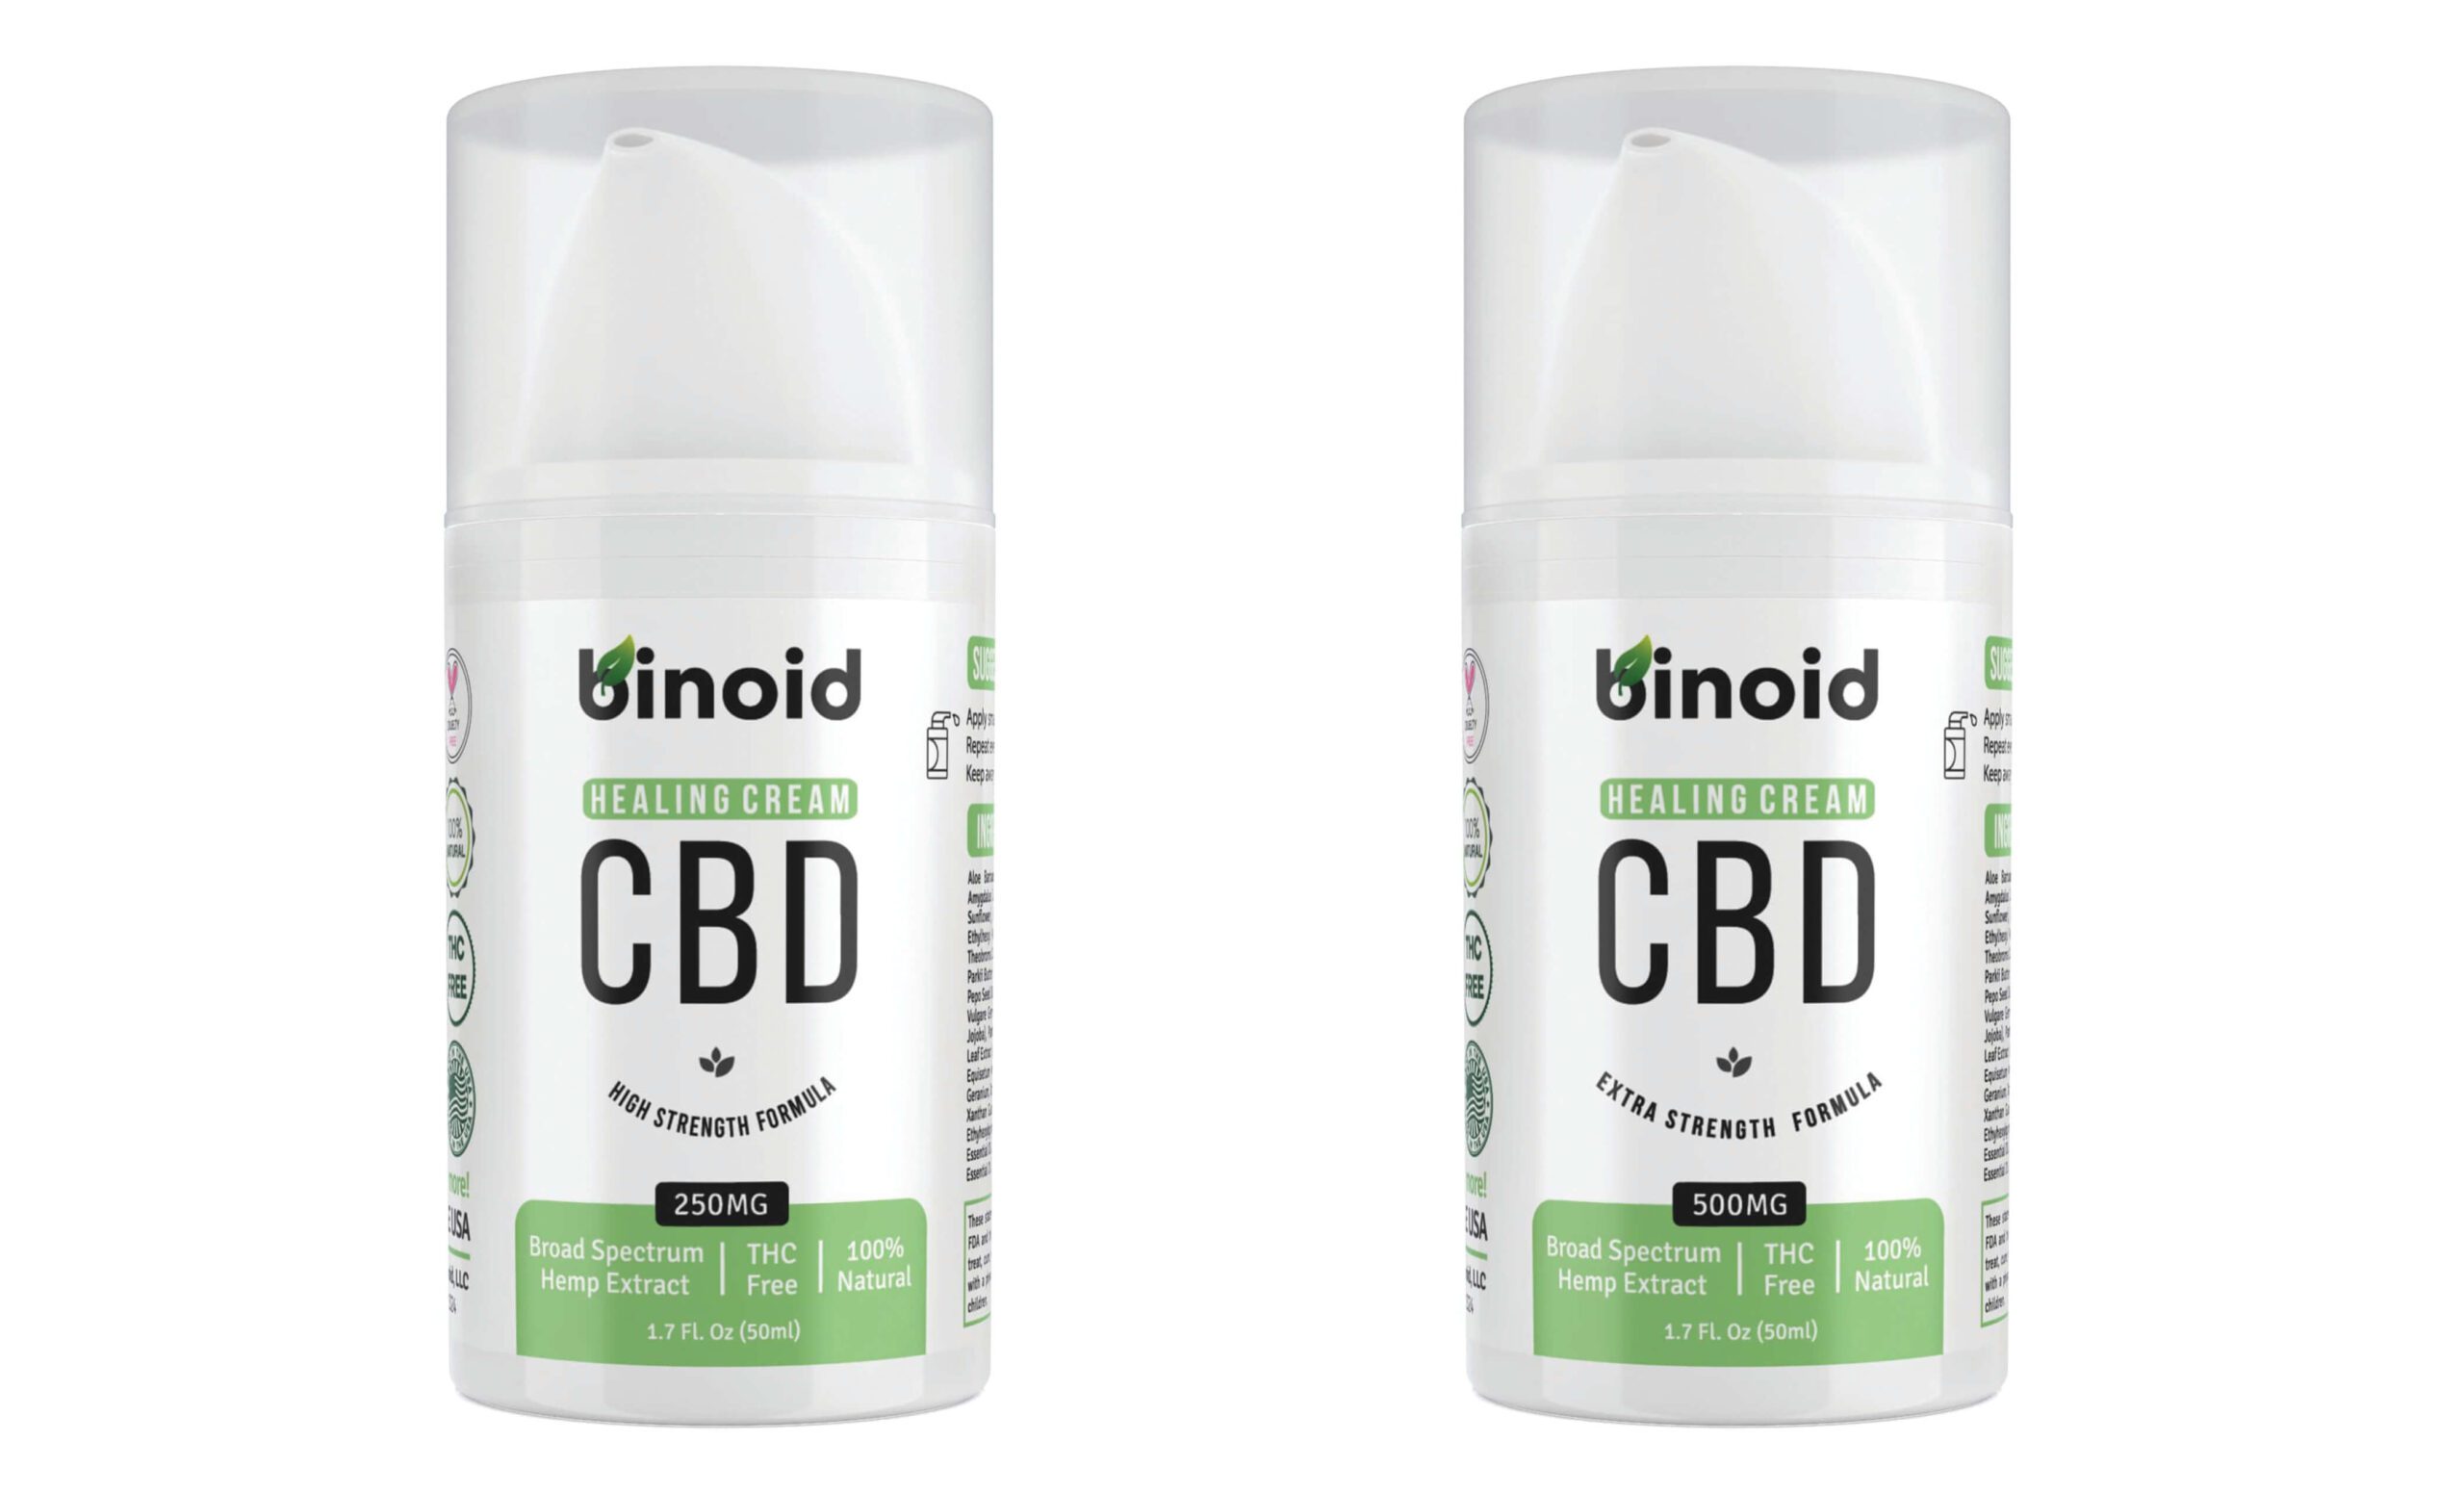 Binoid CBD Cream and Topicals